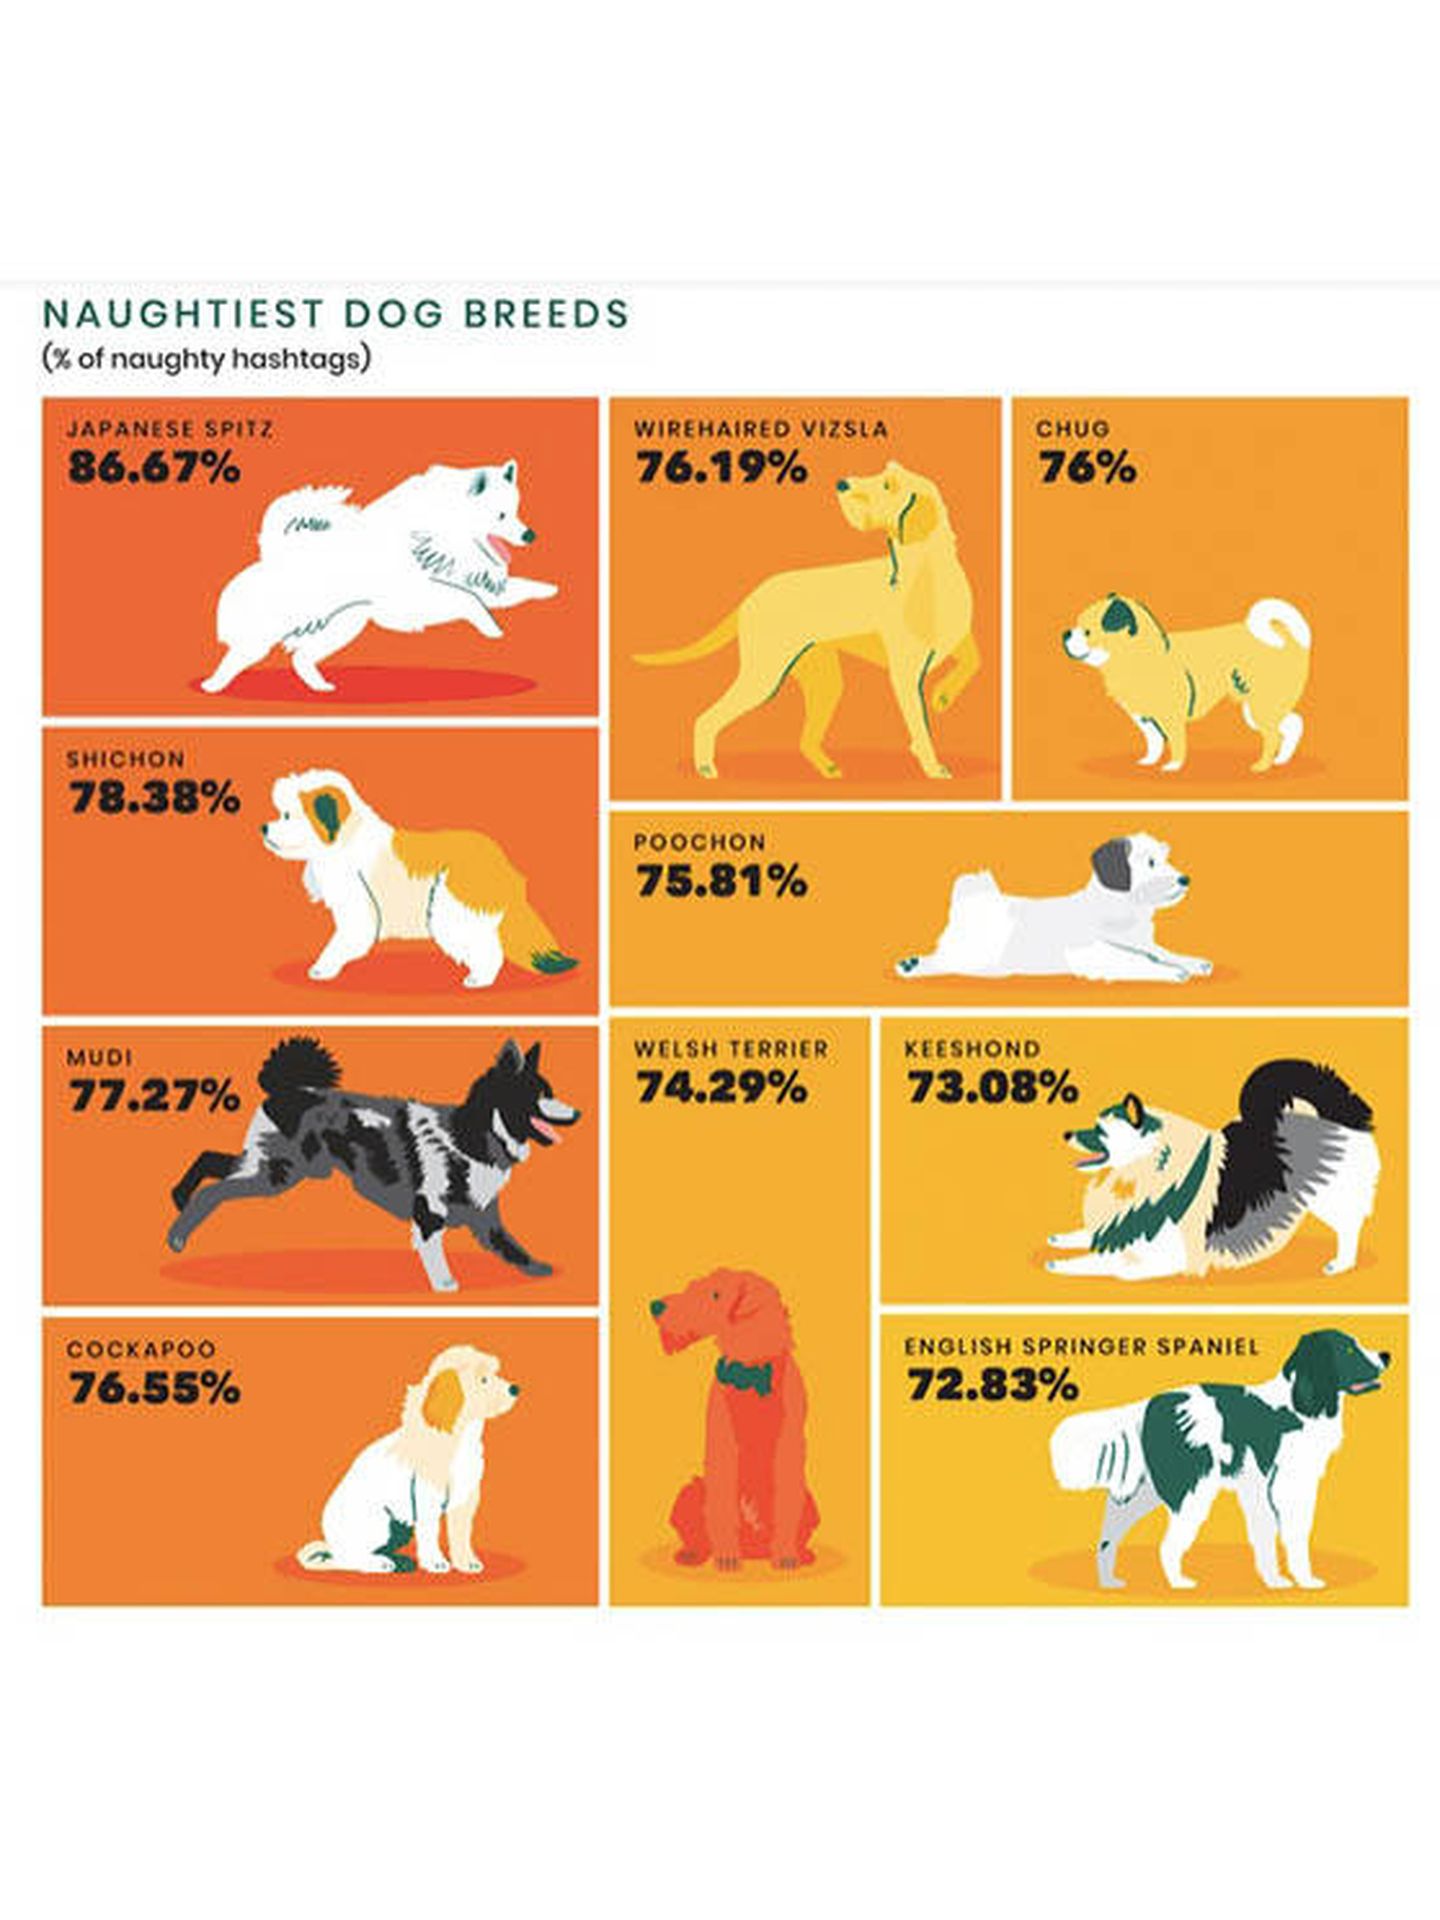 Los perros más traviesos según instagram (Protect My Paws)